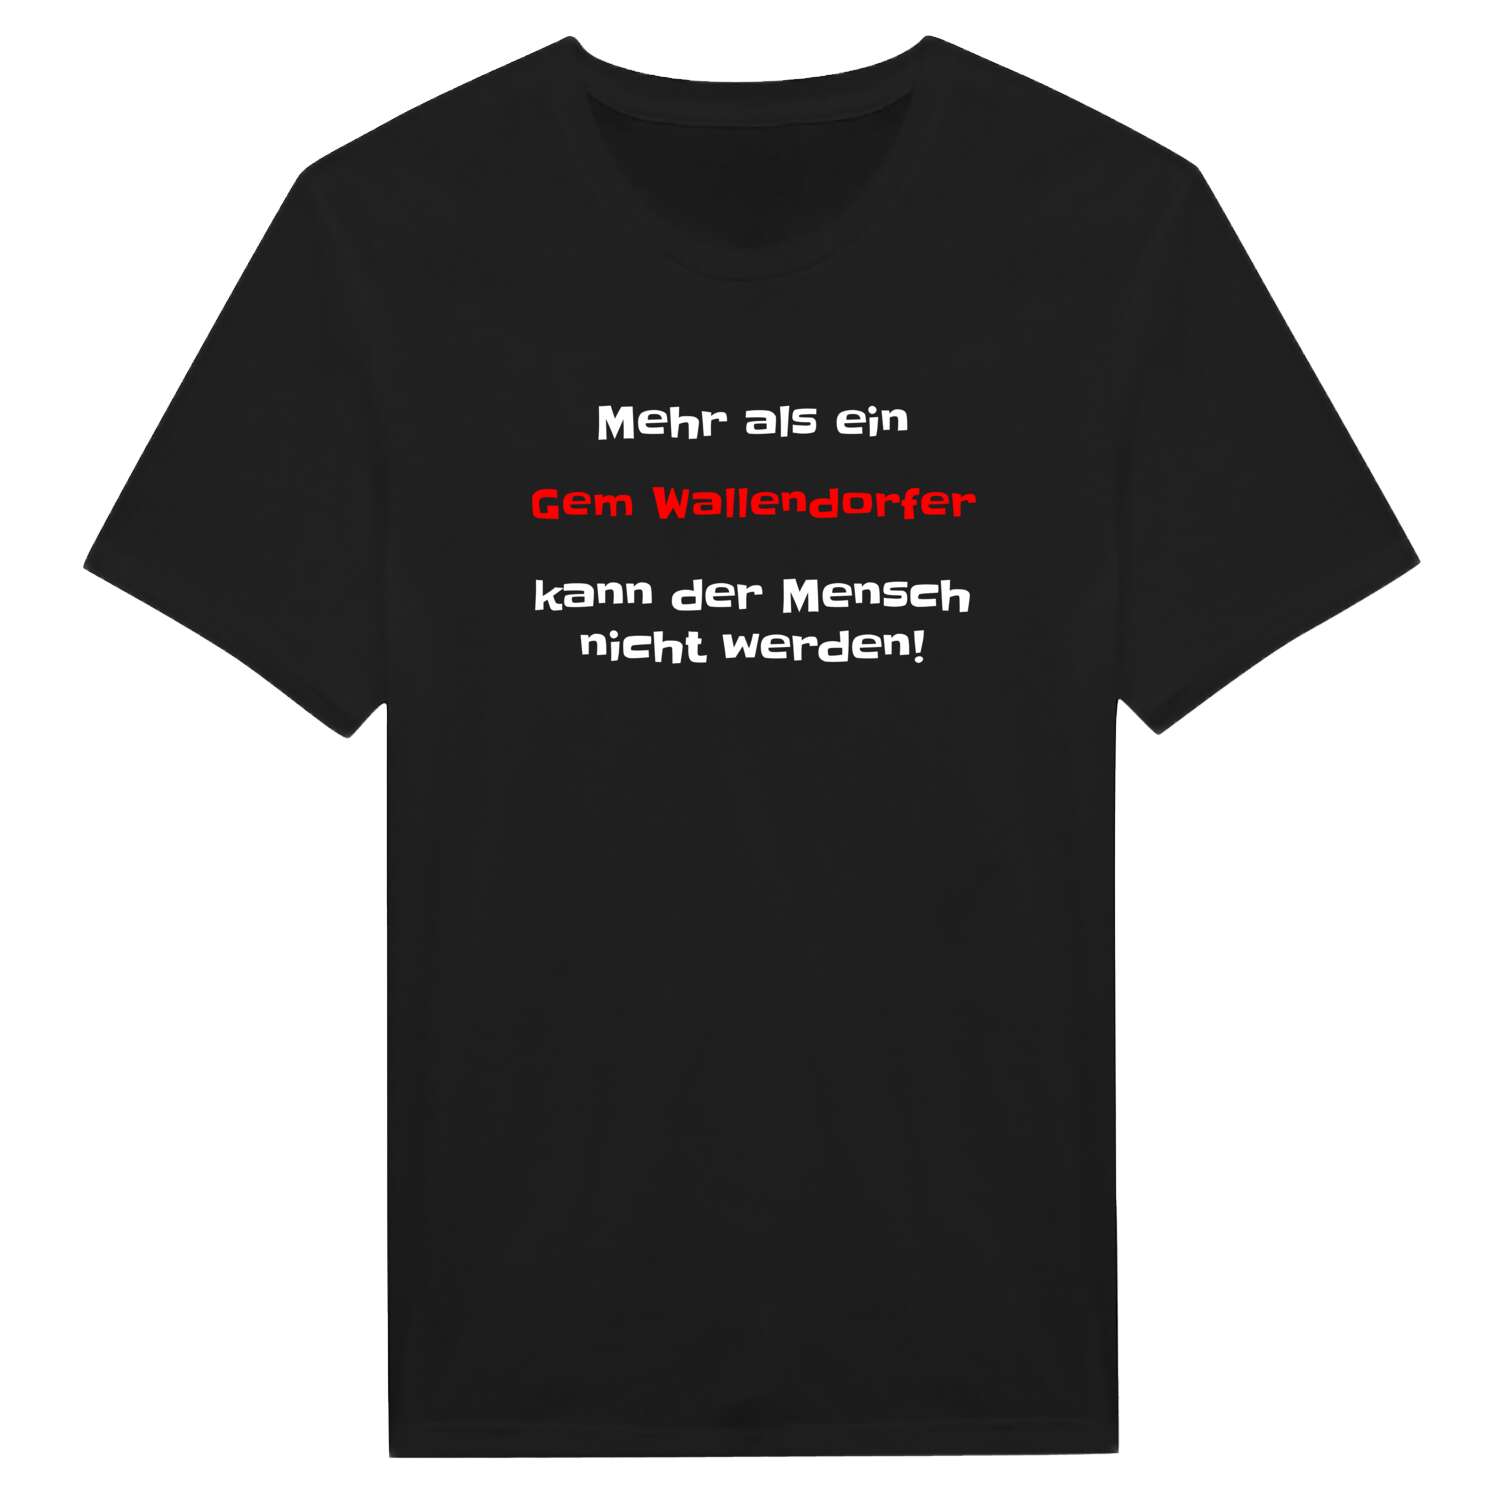 Gem Wallendorf T-Shirt »Mehr als ein«